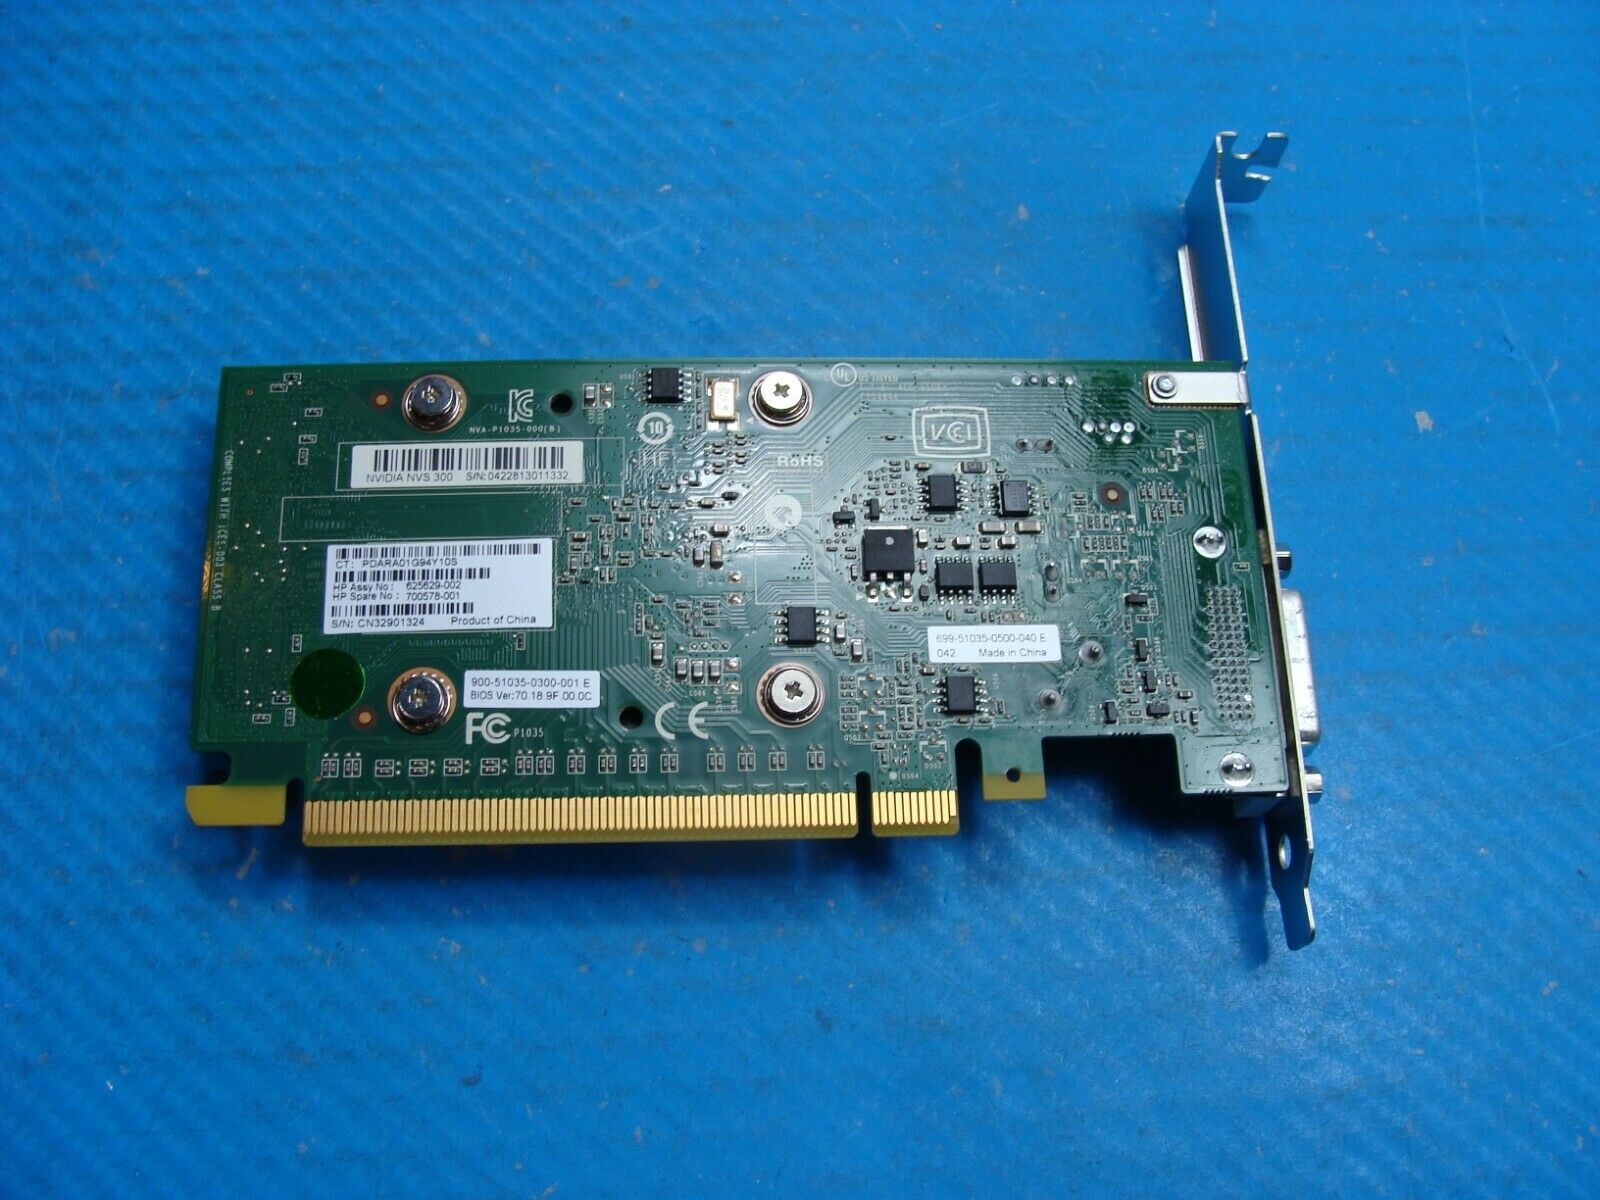 Dell Precision T5600 Genuine Desktop NVIDIA Quadro NVS 300 Video Card 700578-001 Dell